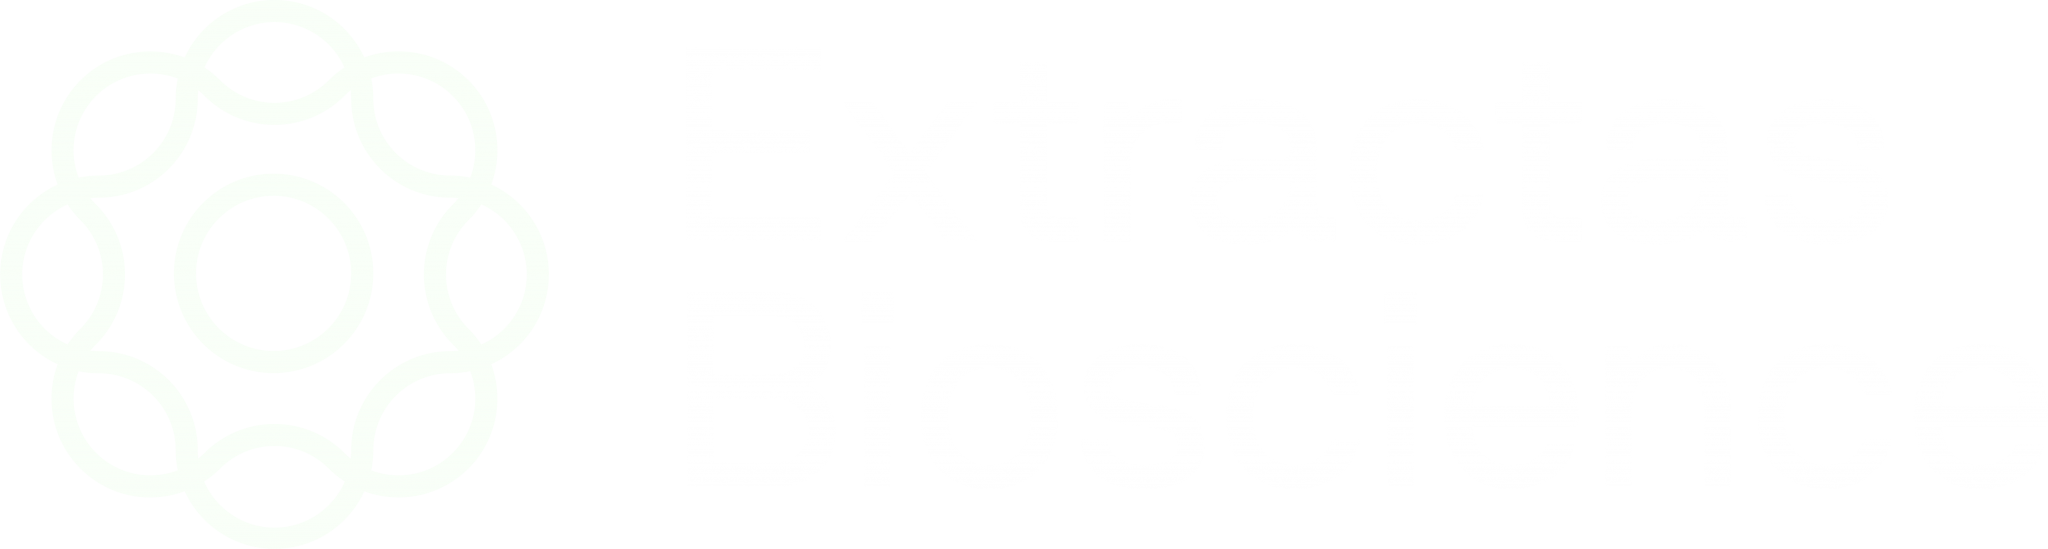 Extractas bioscience logo